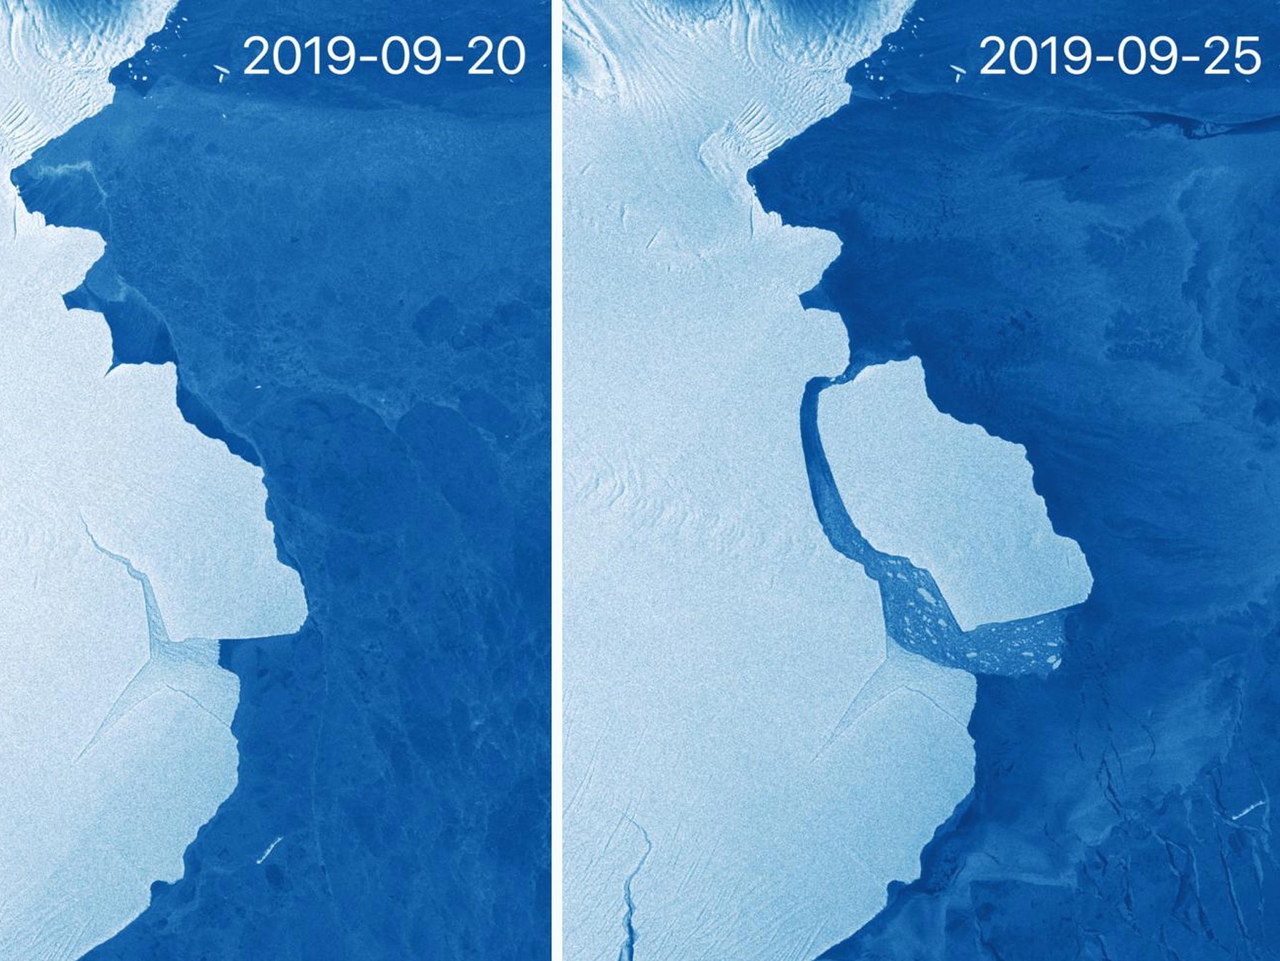 Antarktyda: Ważąca 315 mld ton góra lodowa oderwała się od lodowca szelfowego